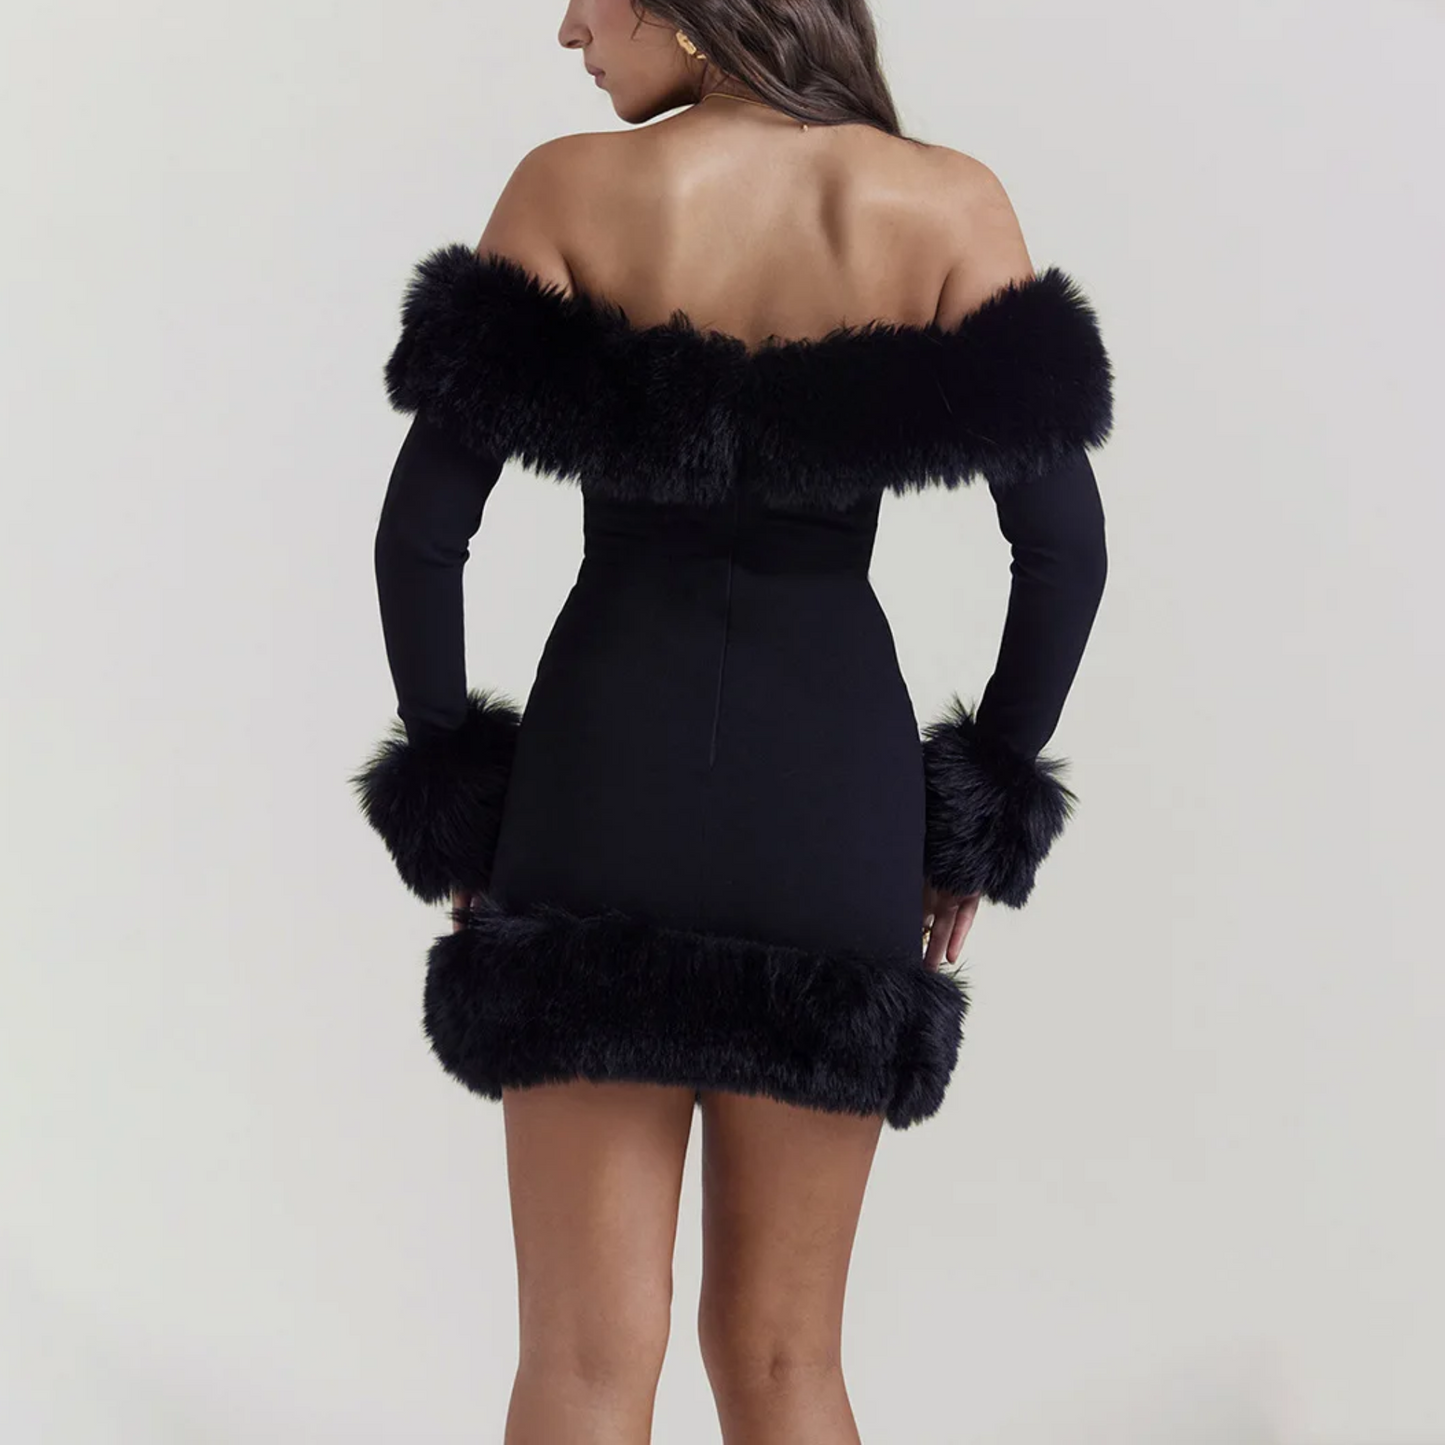 Dulce - Black Off The Shoulder Faux Fur Dress